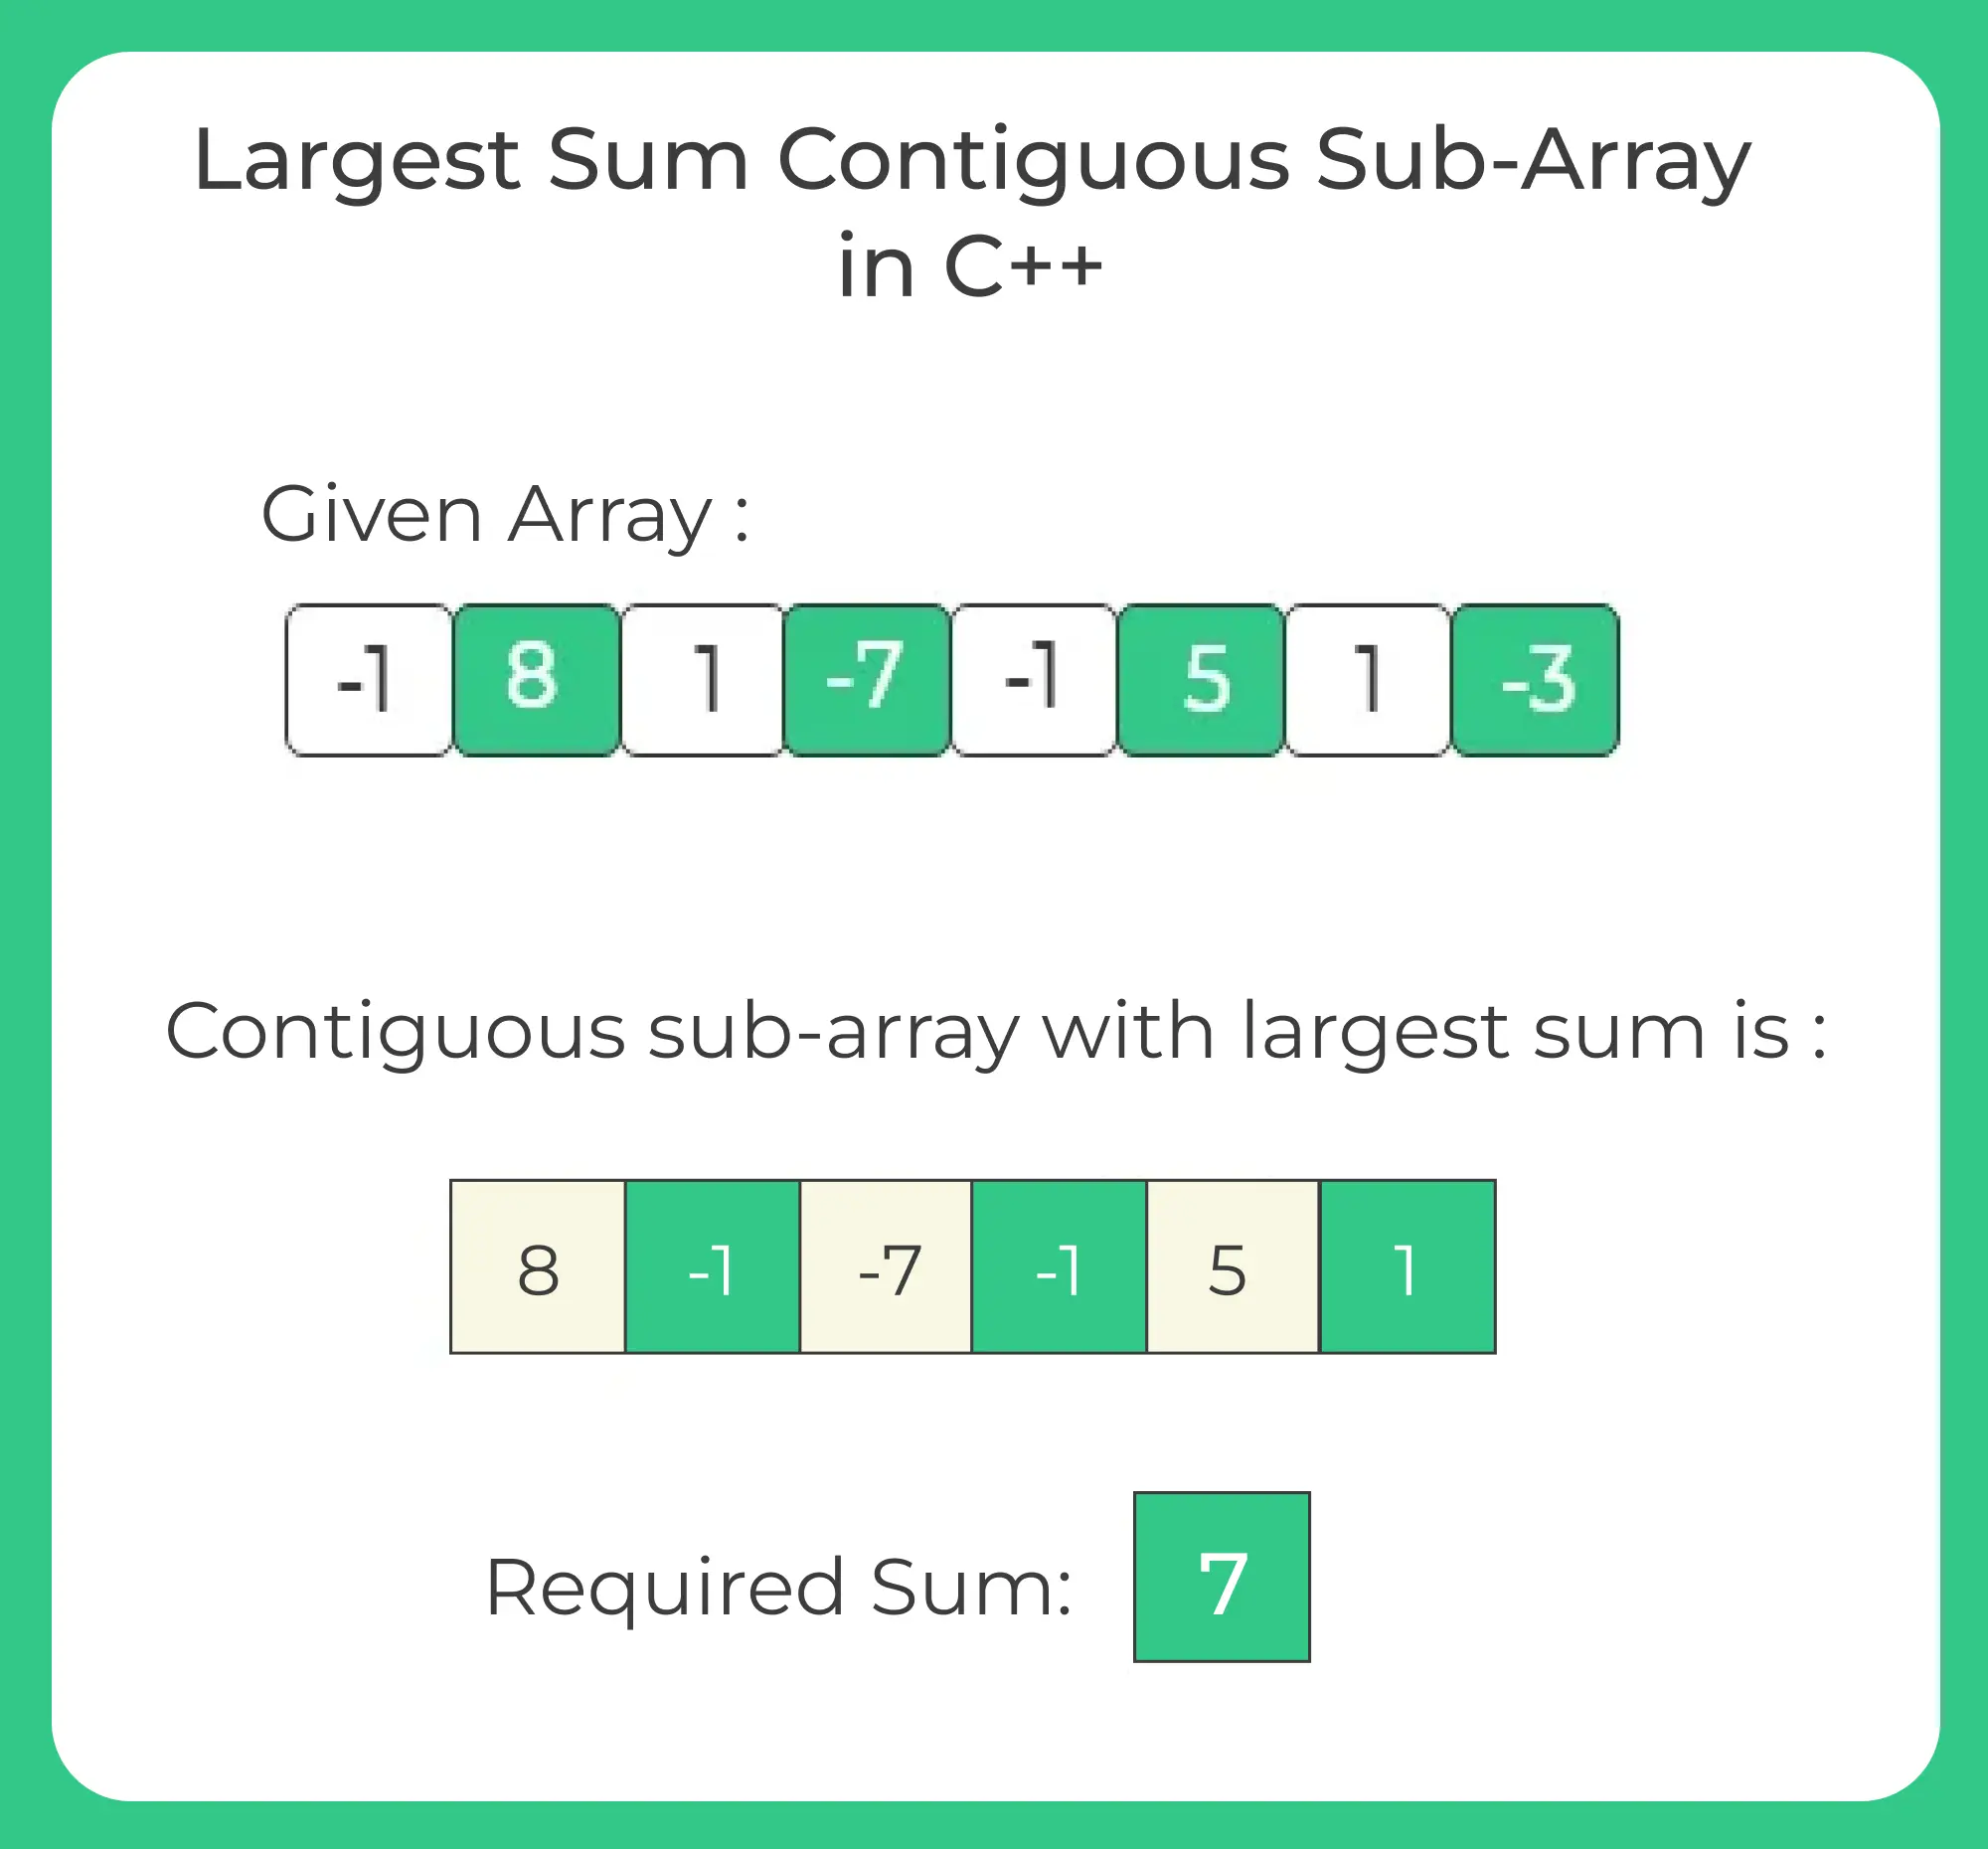 Largest Sum Contiguous Sub-Array in C++